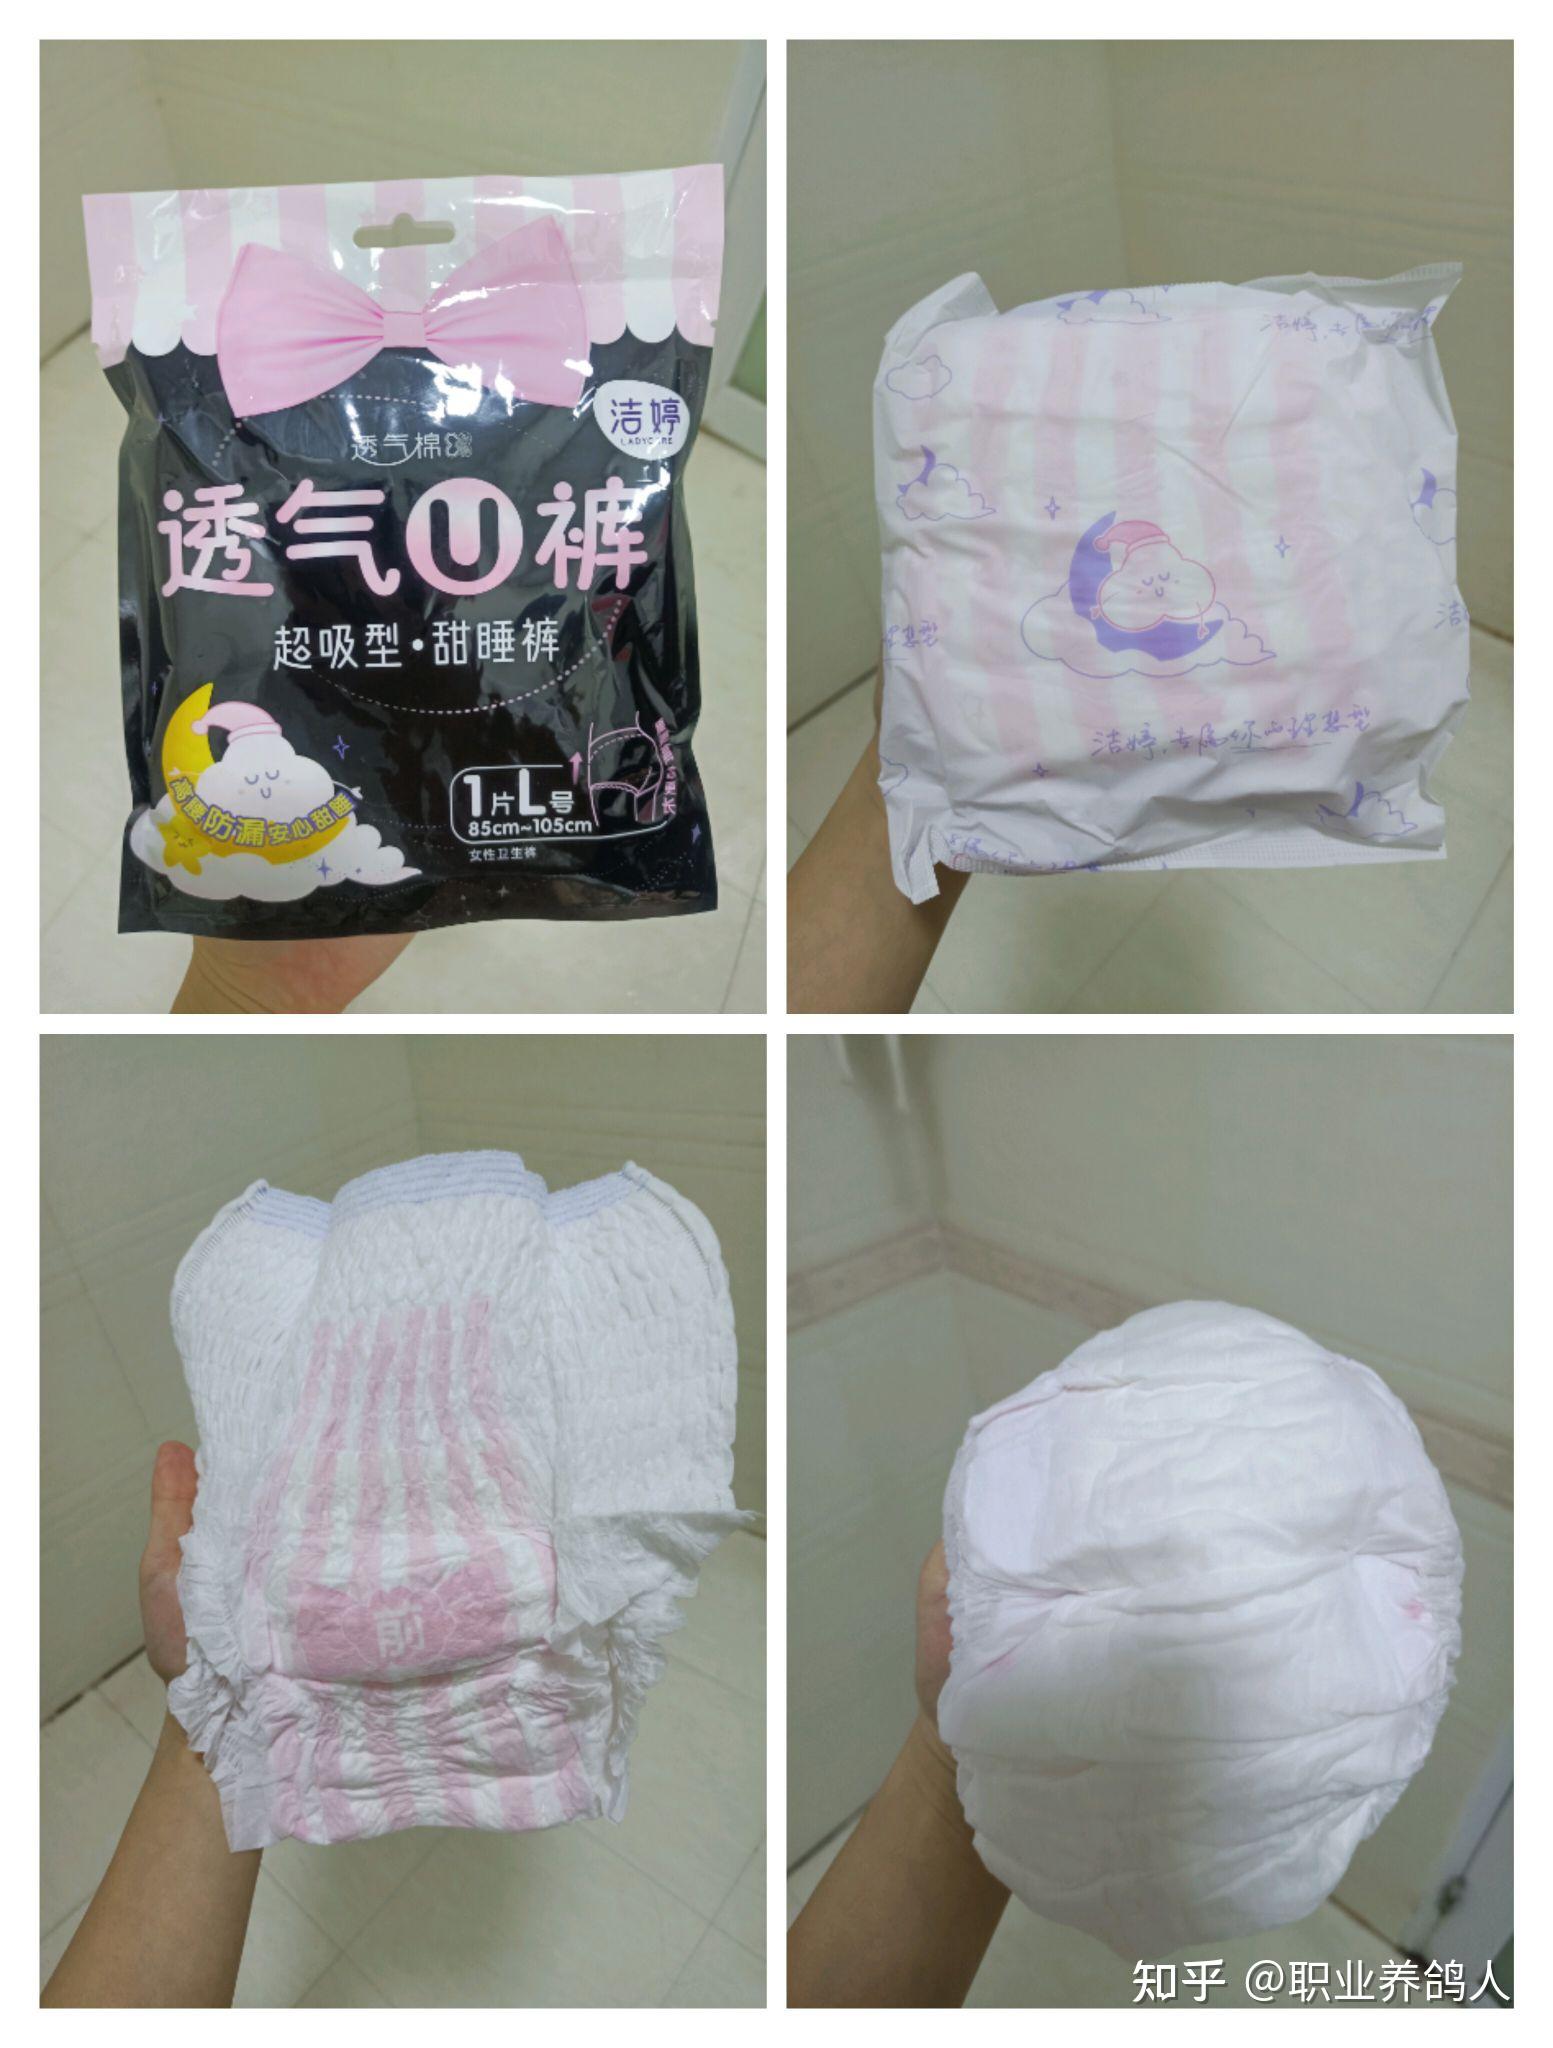 内裤的卫生巾-图库-五毛网